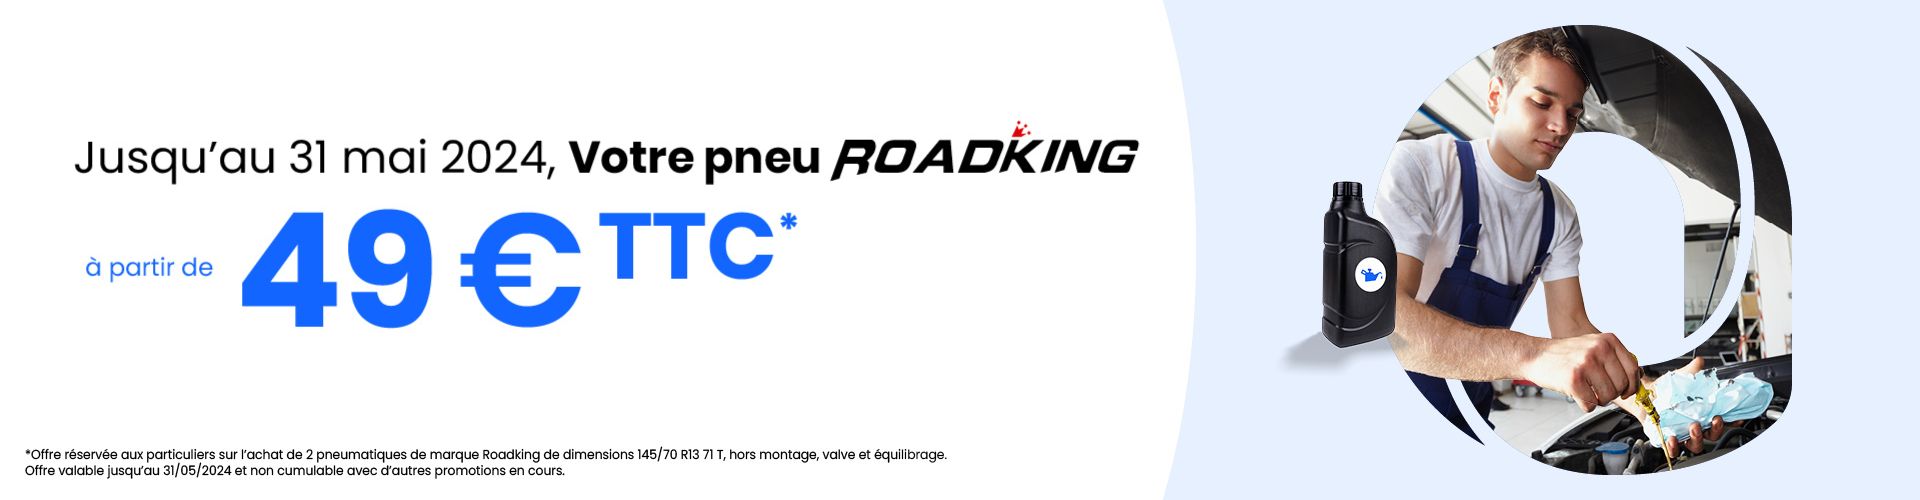 Roadking : Votre pneu Roadking à partir de 49€ TTC